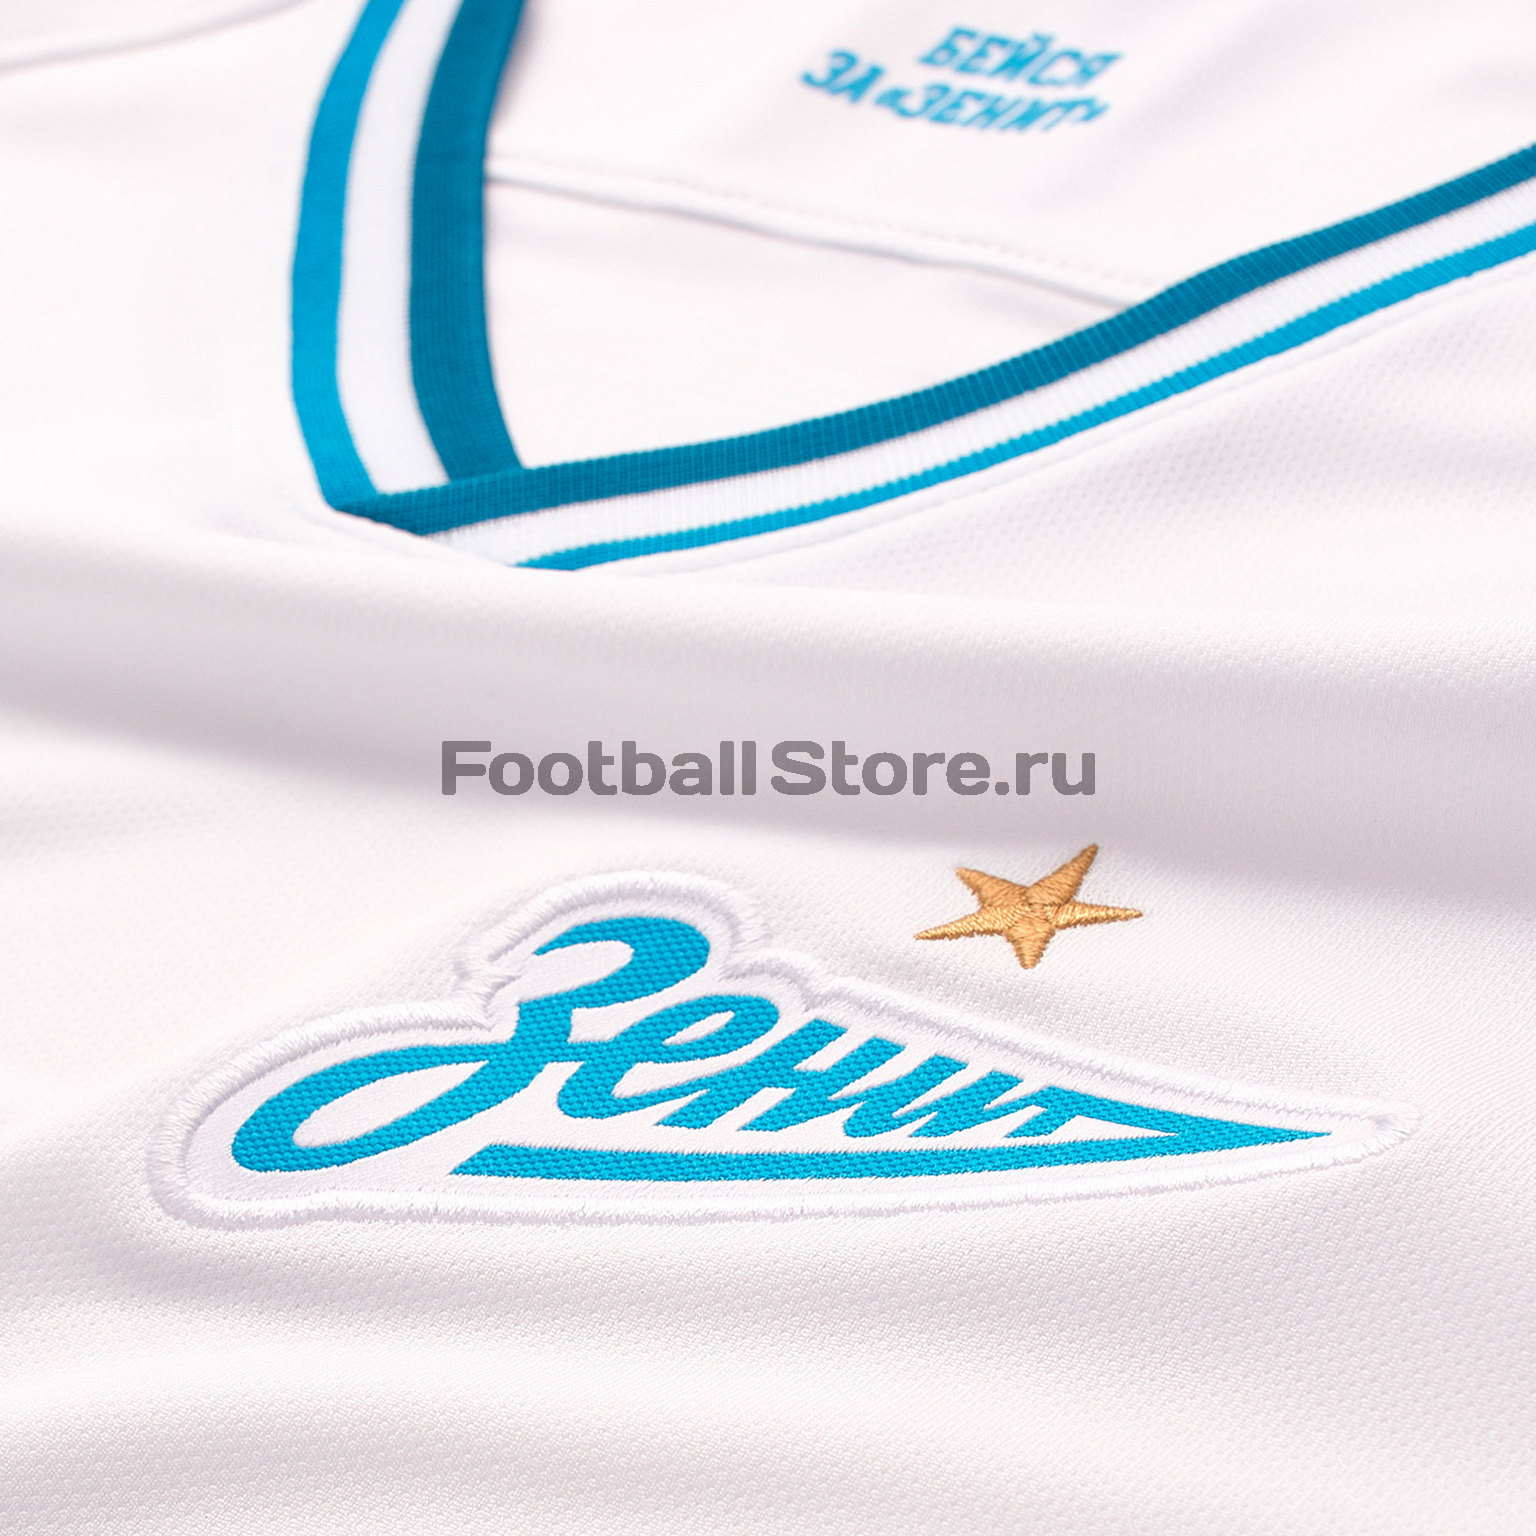 Футболка игровая выездная Nike Zenit сезон 2019/20